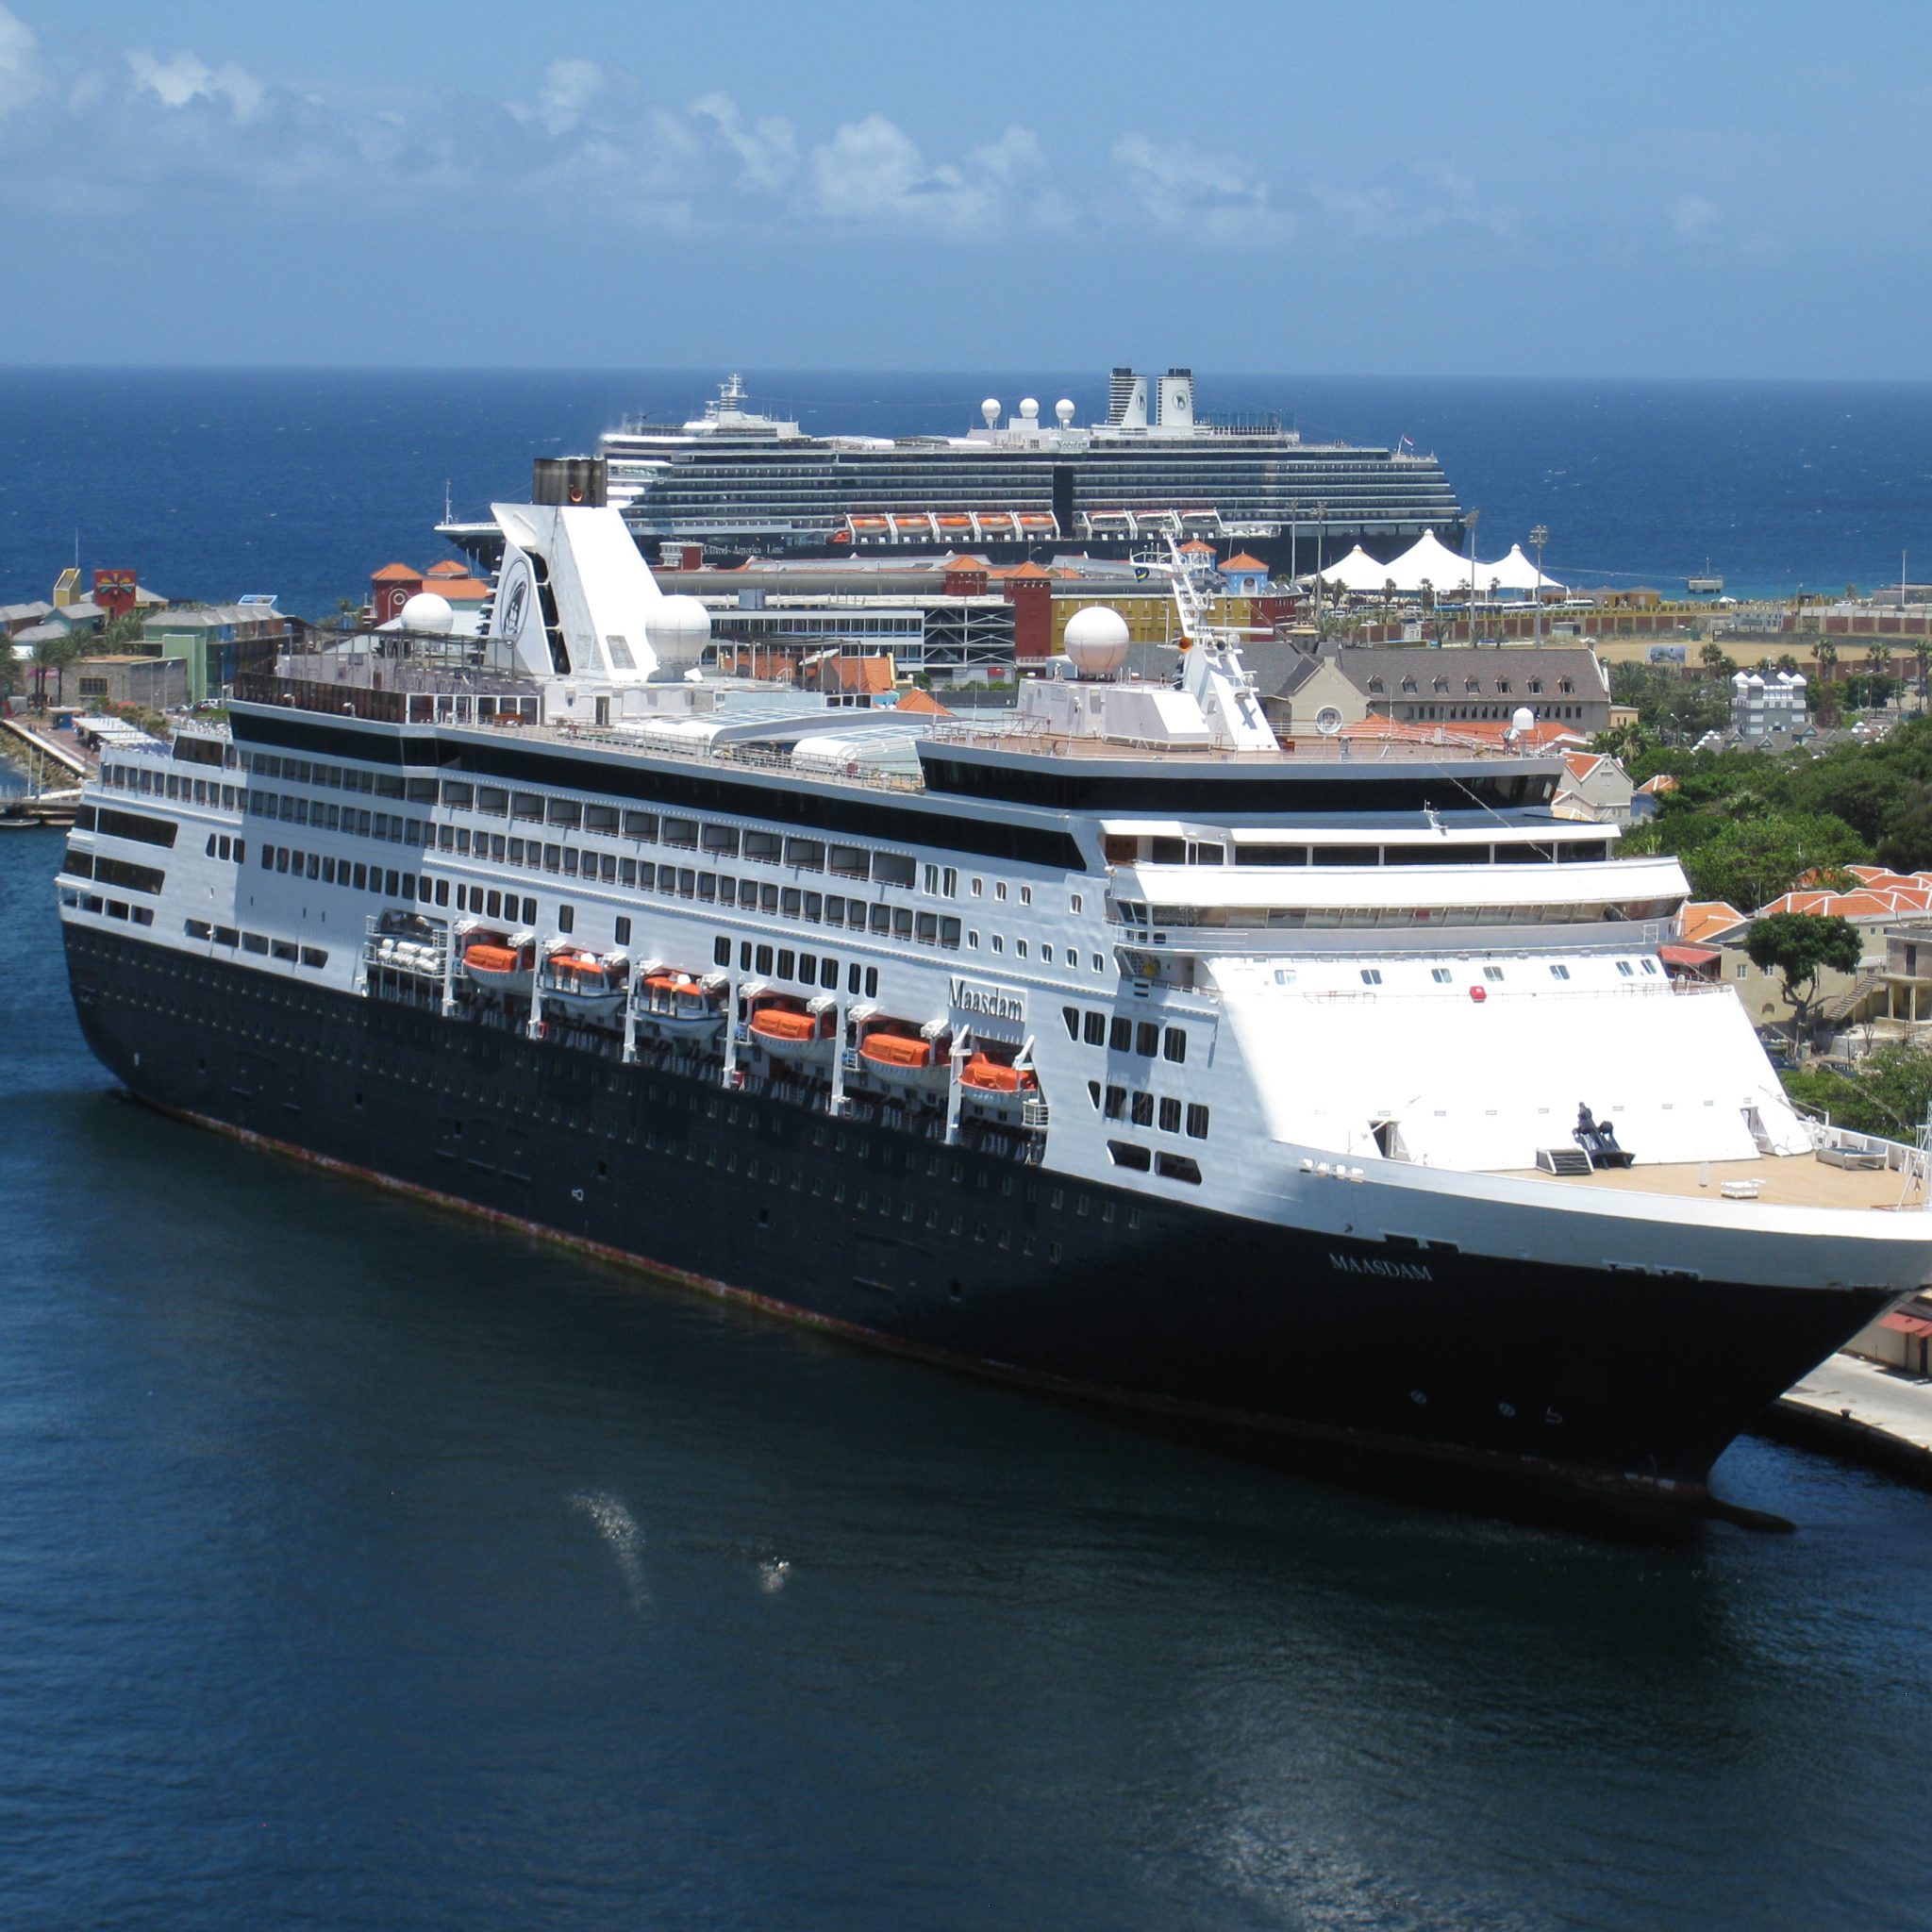 Grote cruisemaatschappijen lijken het eiland sinds het uitbreken van de Coronacrisis weer te herontdekken. (Foto CC)